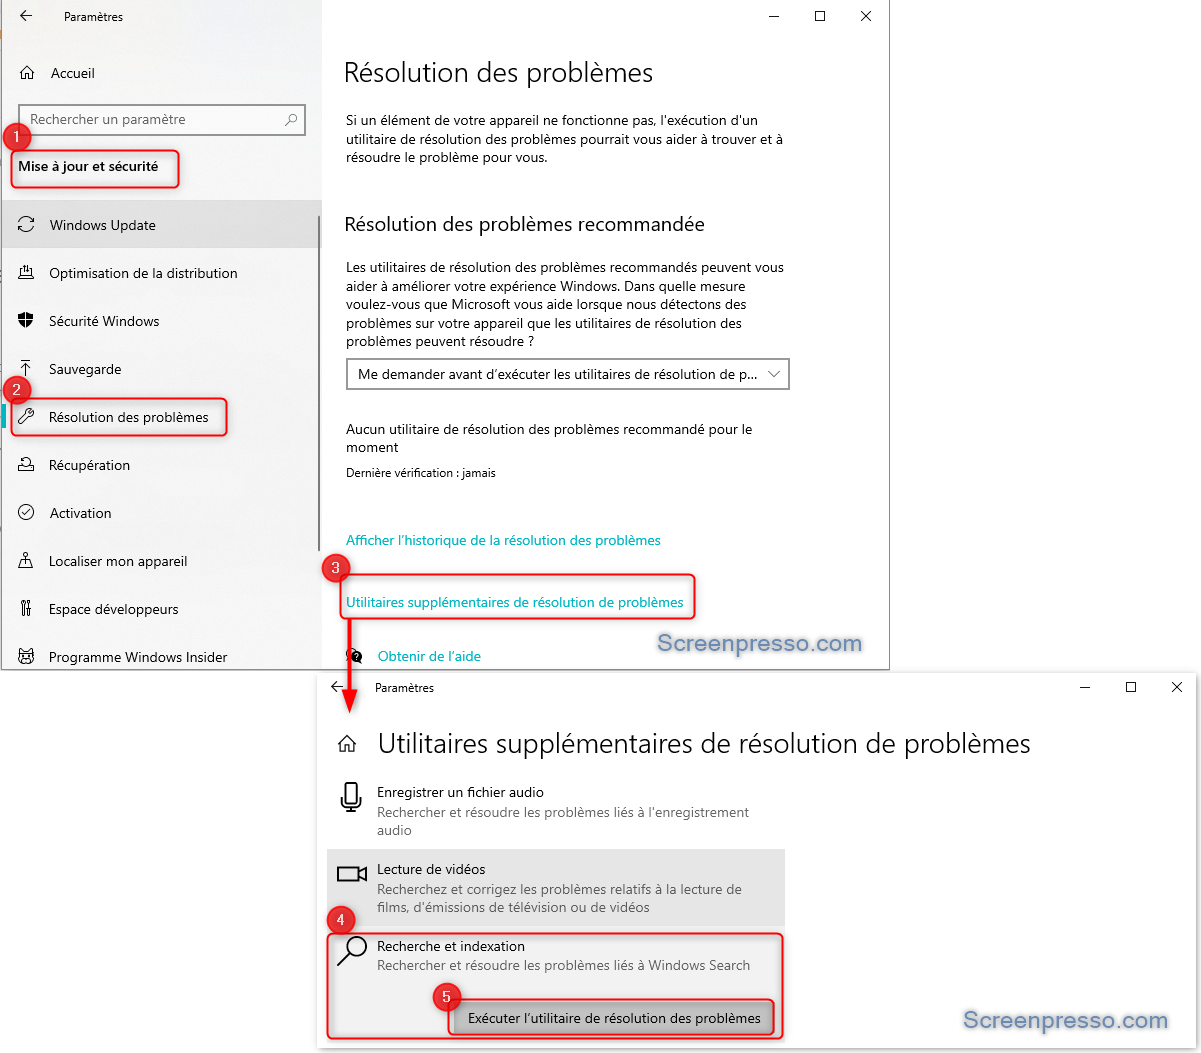  Utilitaire de résolution des problèmes de recherche et indexation sur Windows 10